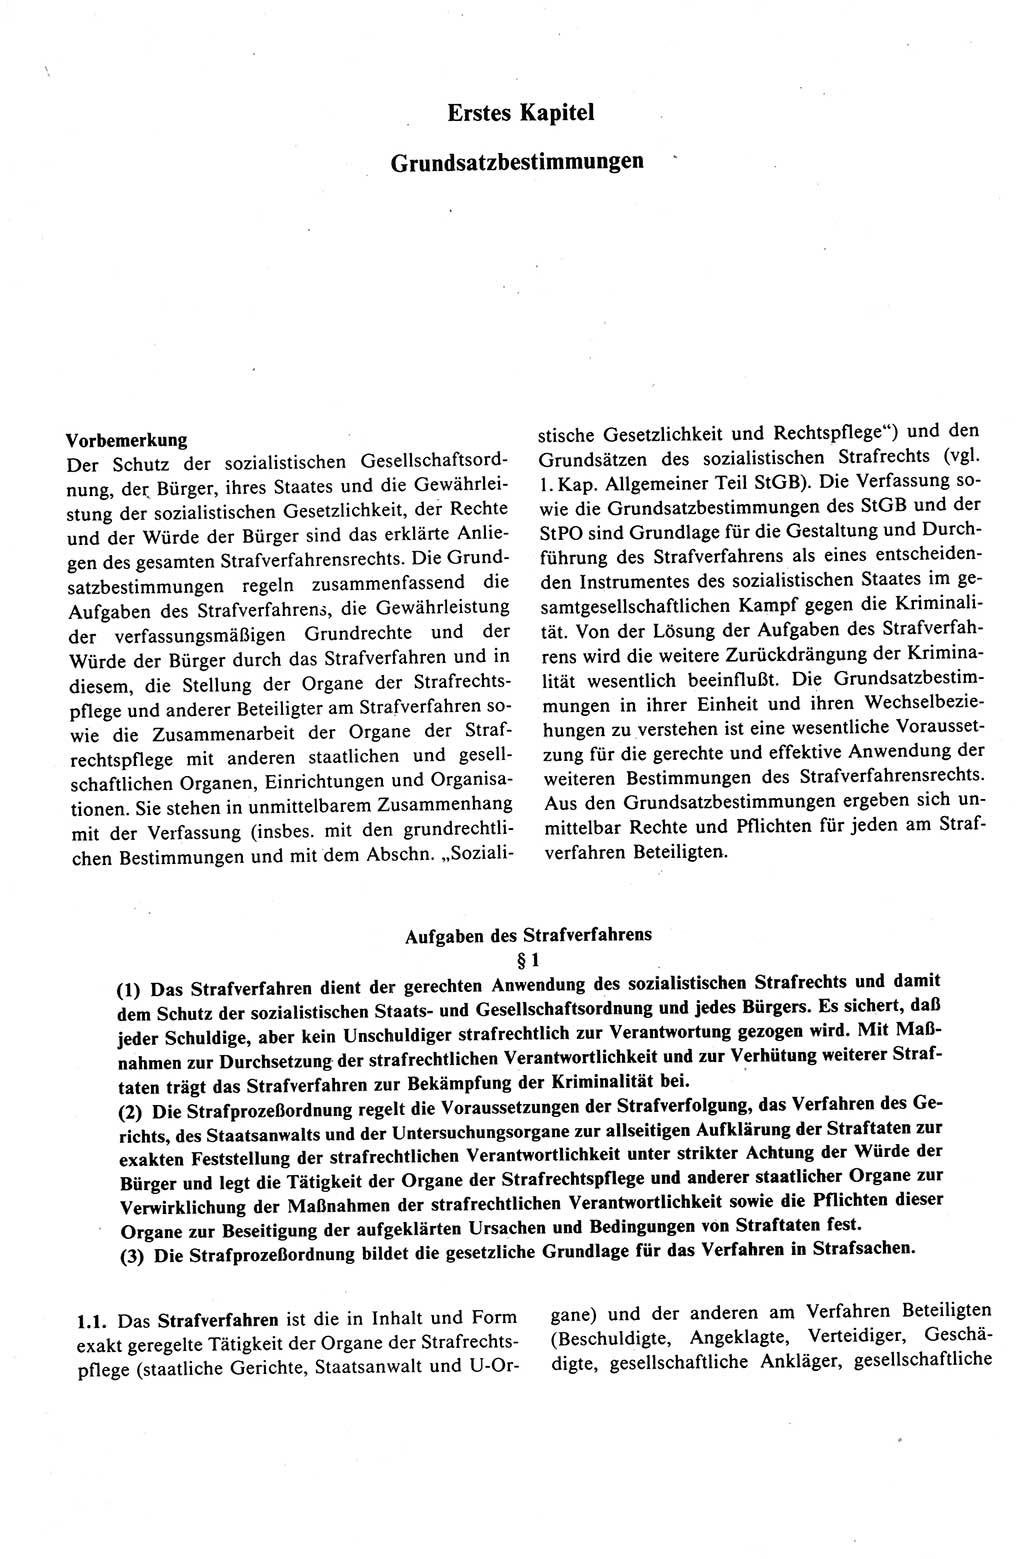 Strafprozeßrecht der DDR (Deutsche Demokratische Republik), Kommentar zur Strafprozeßordnung (StPO) 1989, Seite 19 (Strafprozeßr. DDR Komm. StPO 1989, S. 19)